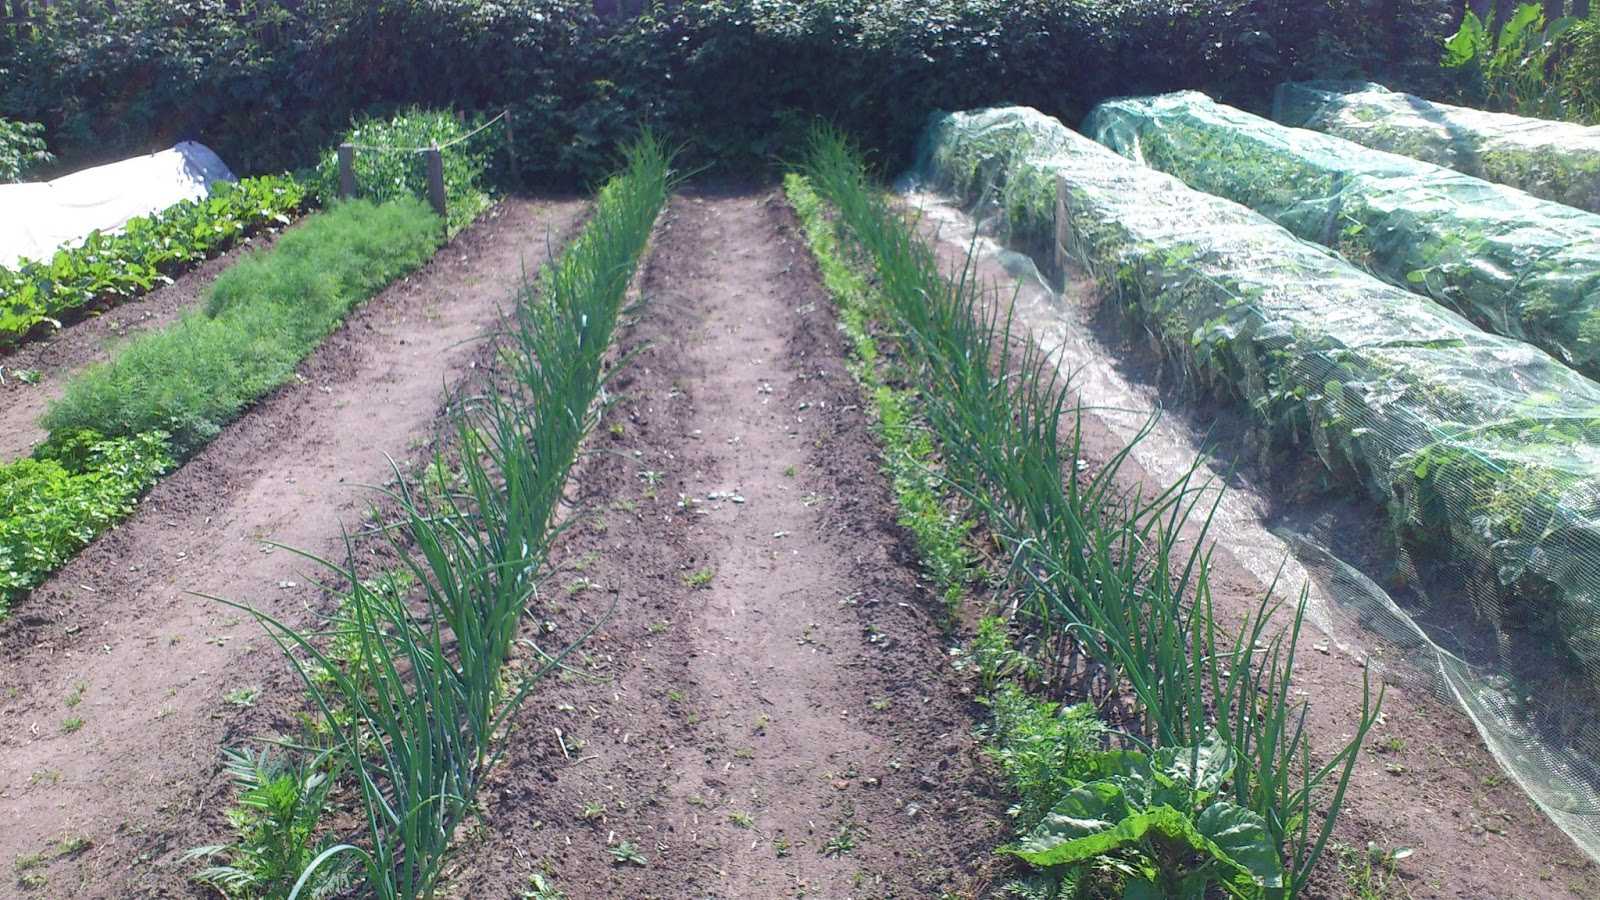 Метод посадки по митлайдеру расстояние между растениями. как обустроить огород по митлайдеру и вырастить по-настоящему богатырские овощи